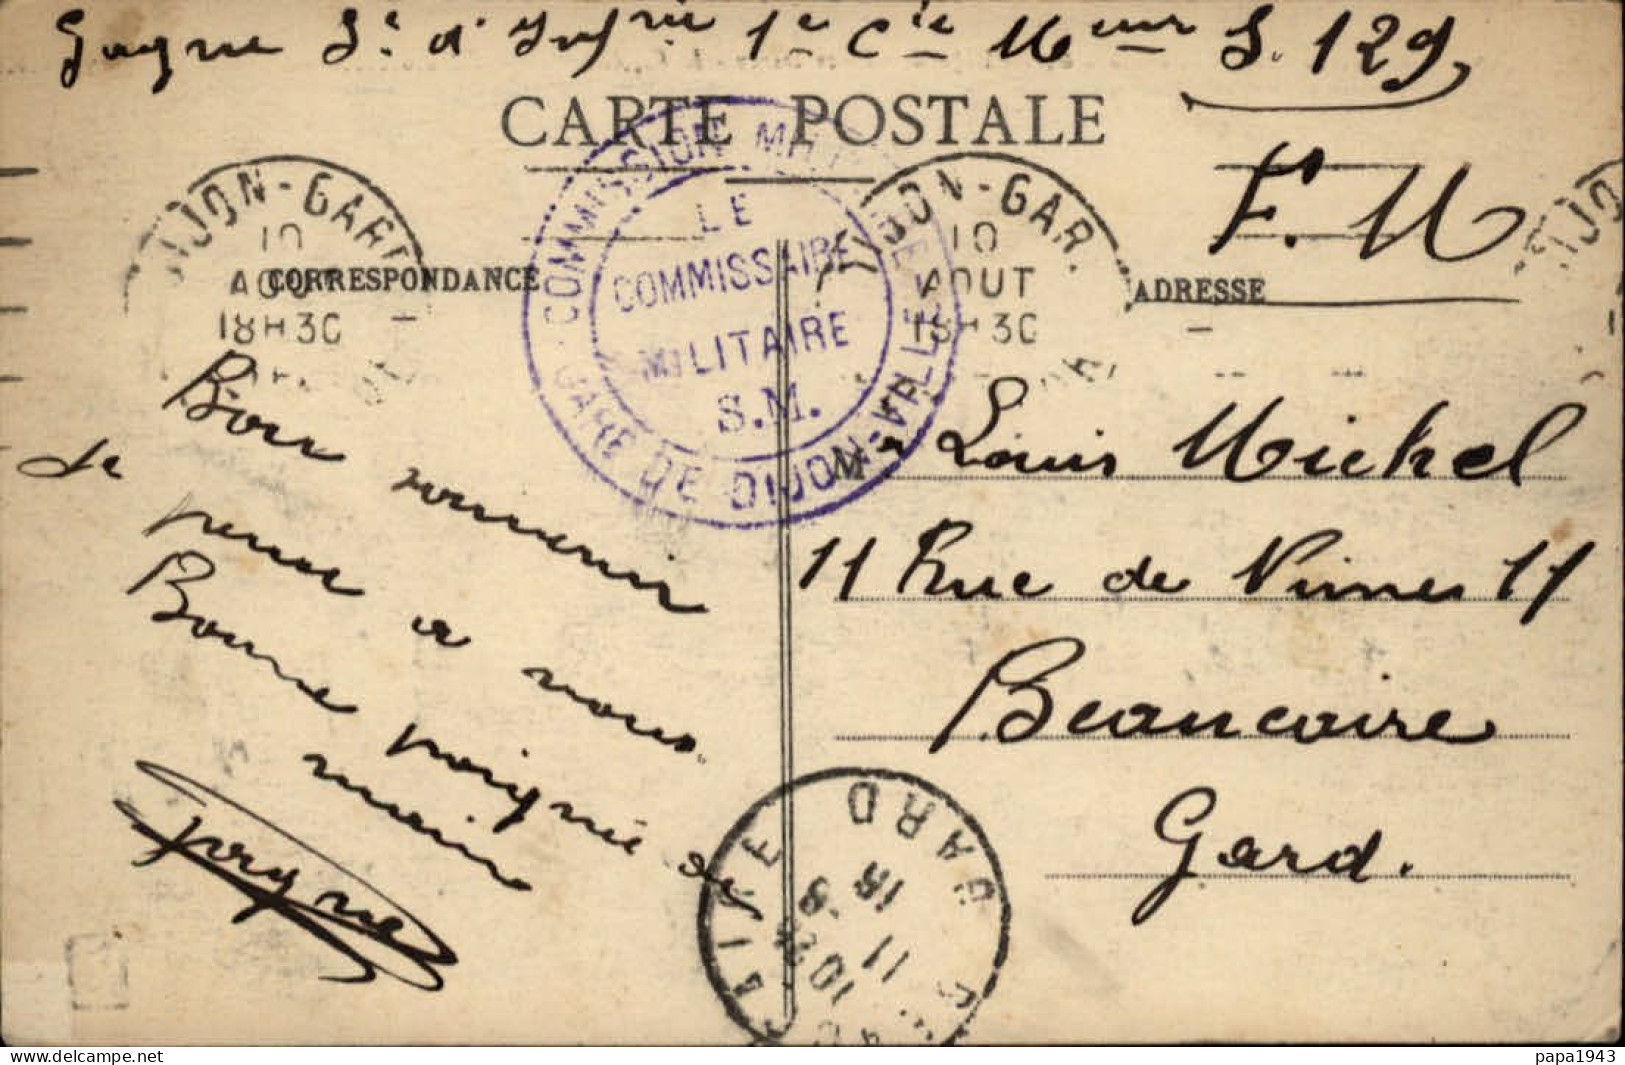 1915  C P  Cachet  "  COMMISSION MILITAIRE GARE DE DIJON - VILLE "  Envoyée à BEAUCAIRE - Lettres & Documents